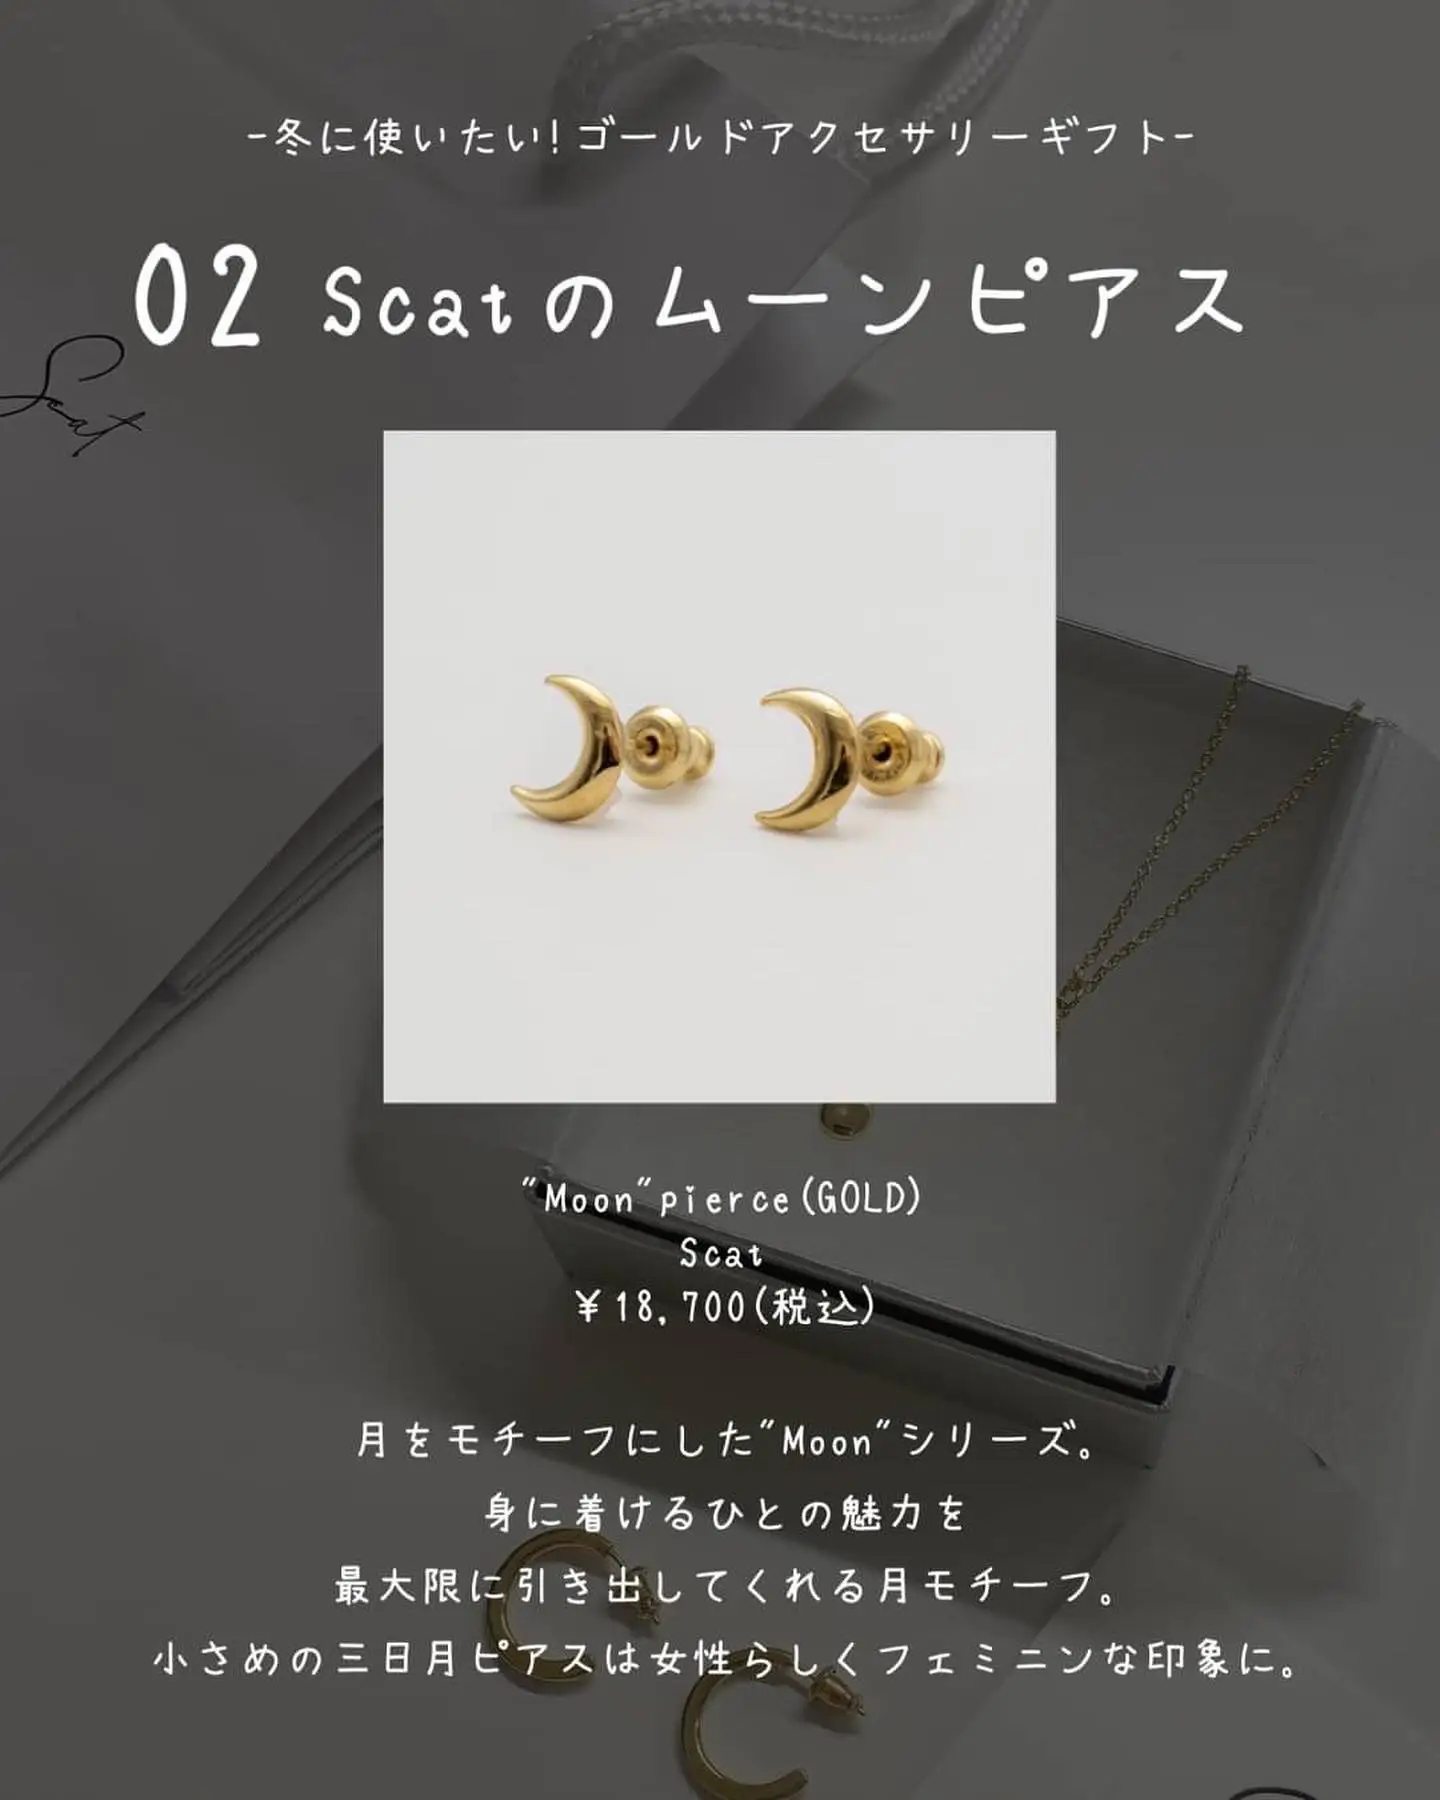 ピアスキラキラ プレゼント 5000円 - Lemon8検索